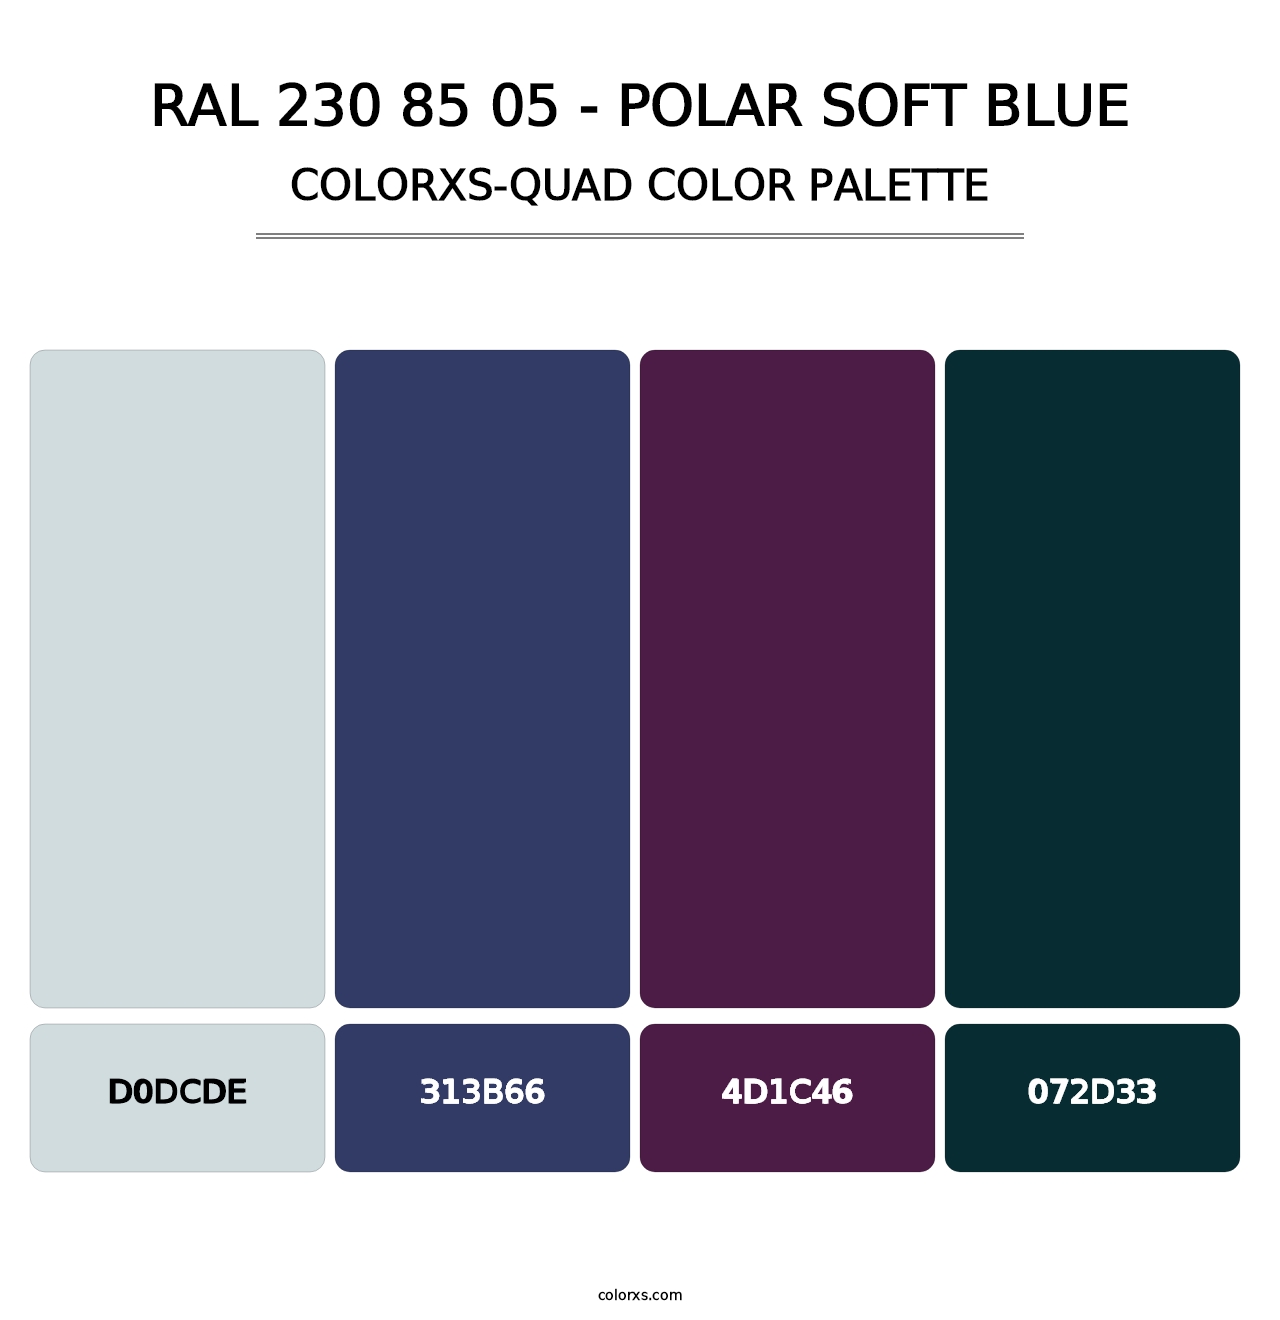 RAL 230 85 05 - Polar Soft Blue - Colorxs Quad Palette